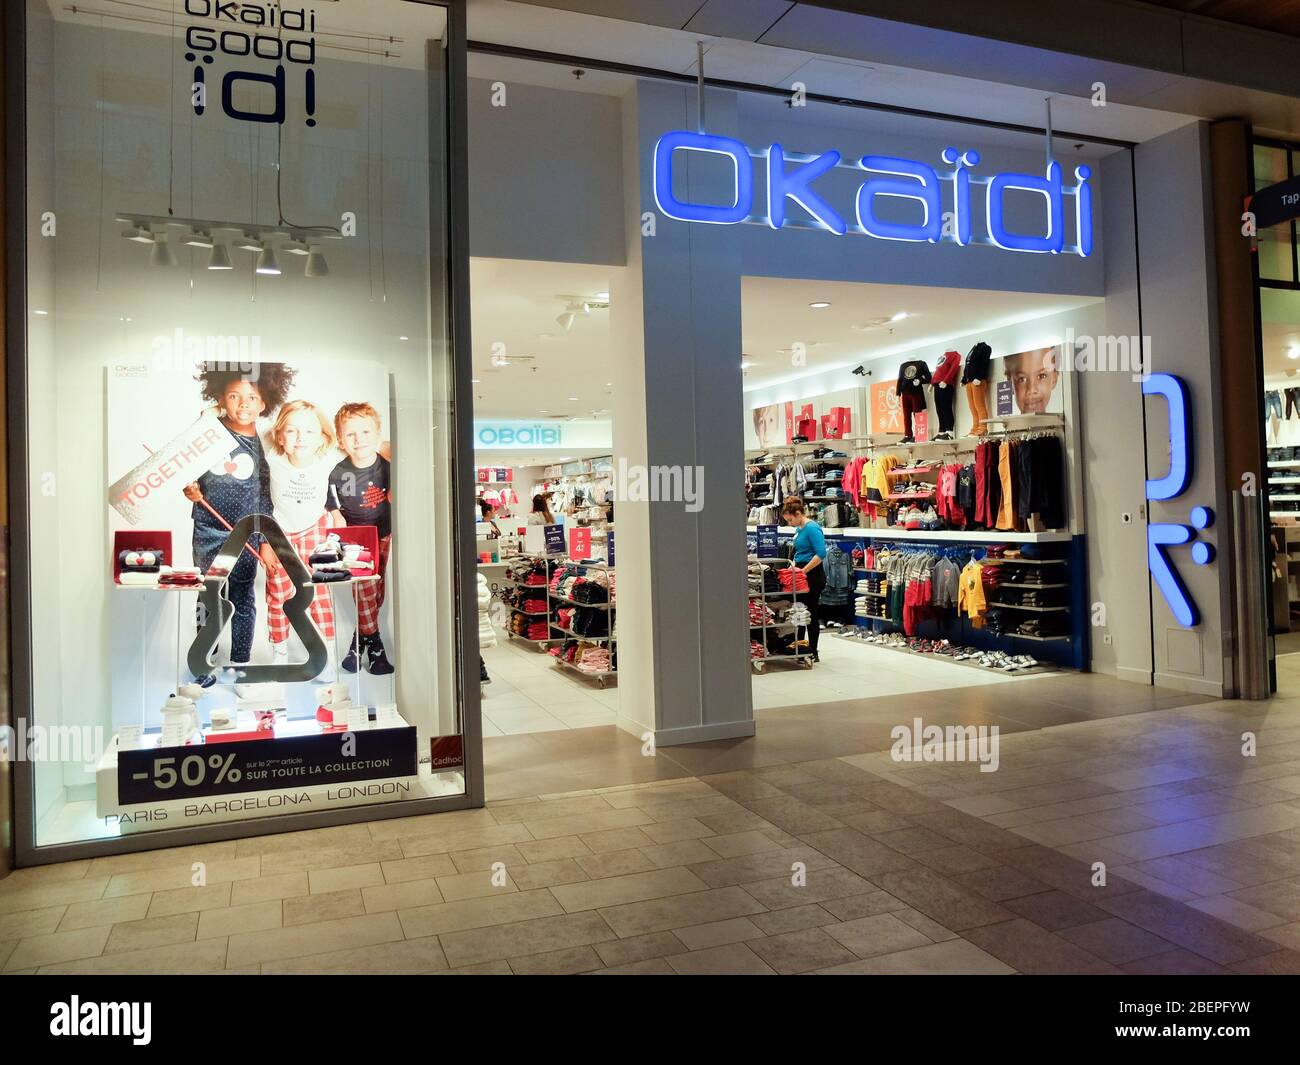 Tienda Okaïdi. Okaïdi es Marca y cadena francesa de tiendas de ropa para niños de 0 años Fotografía de stock - Alamy